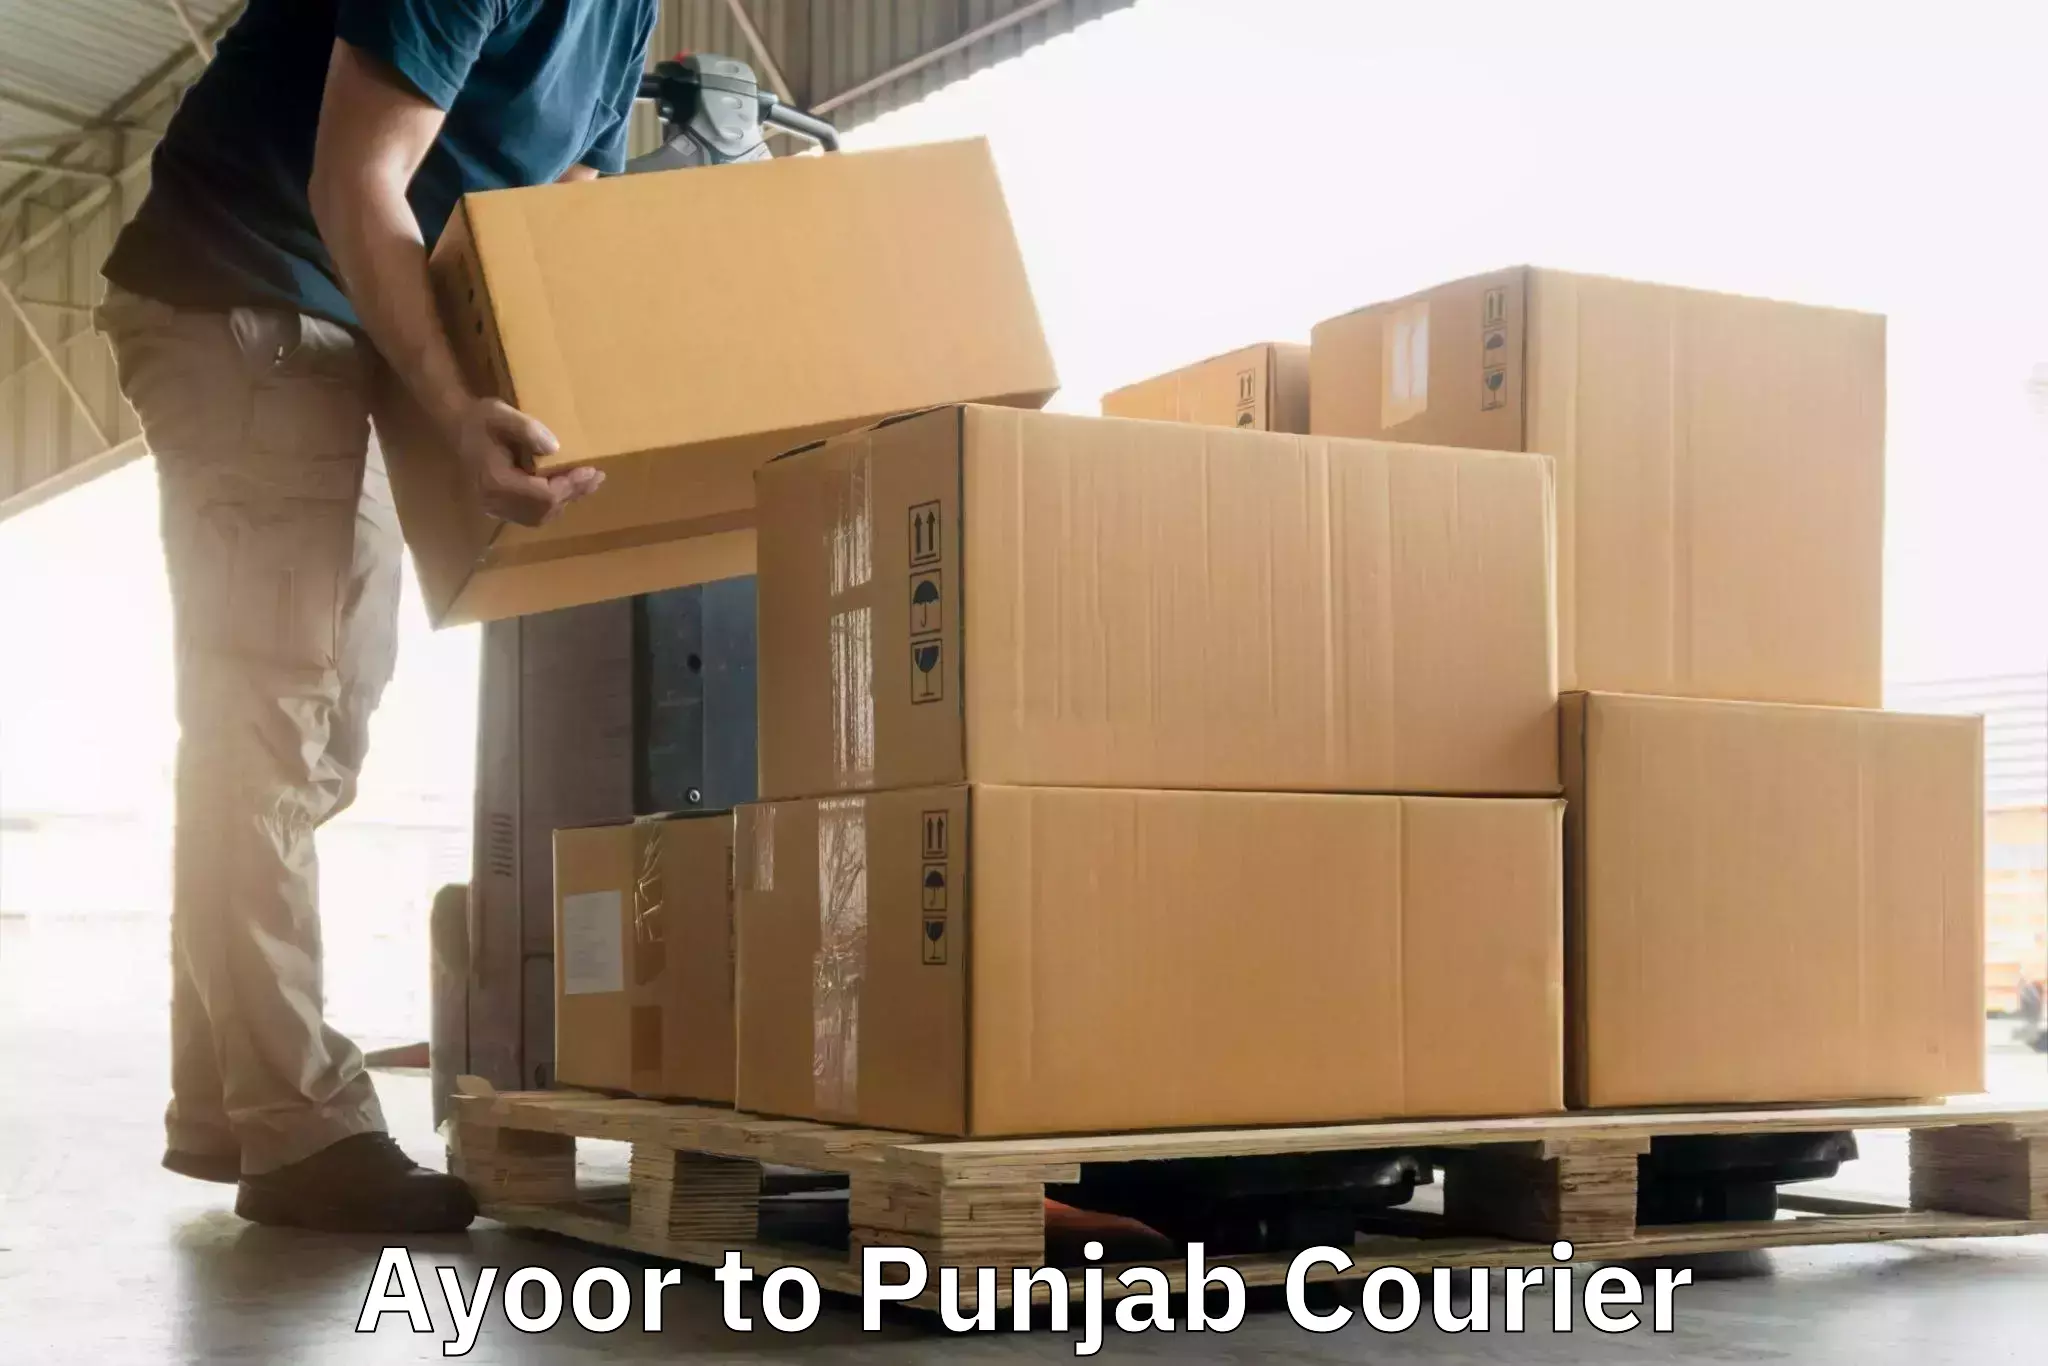 Regular parcel service Ayoor to Punjab